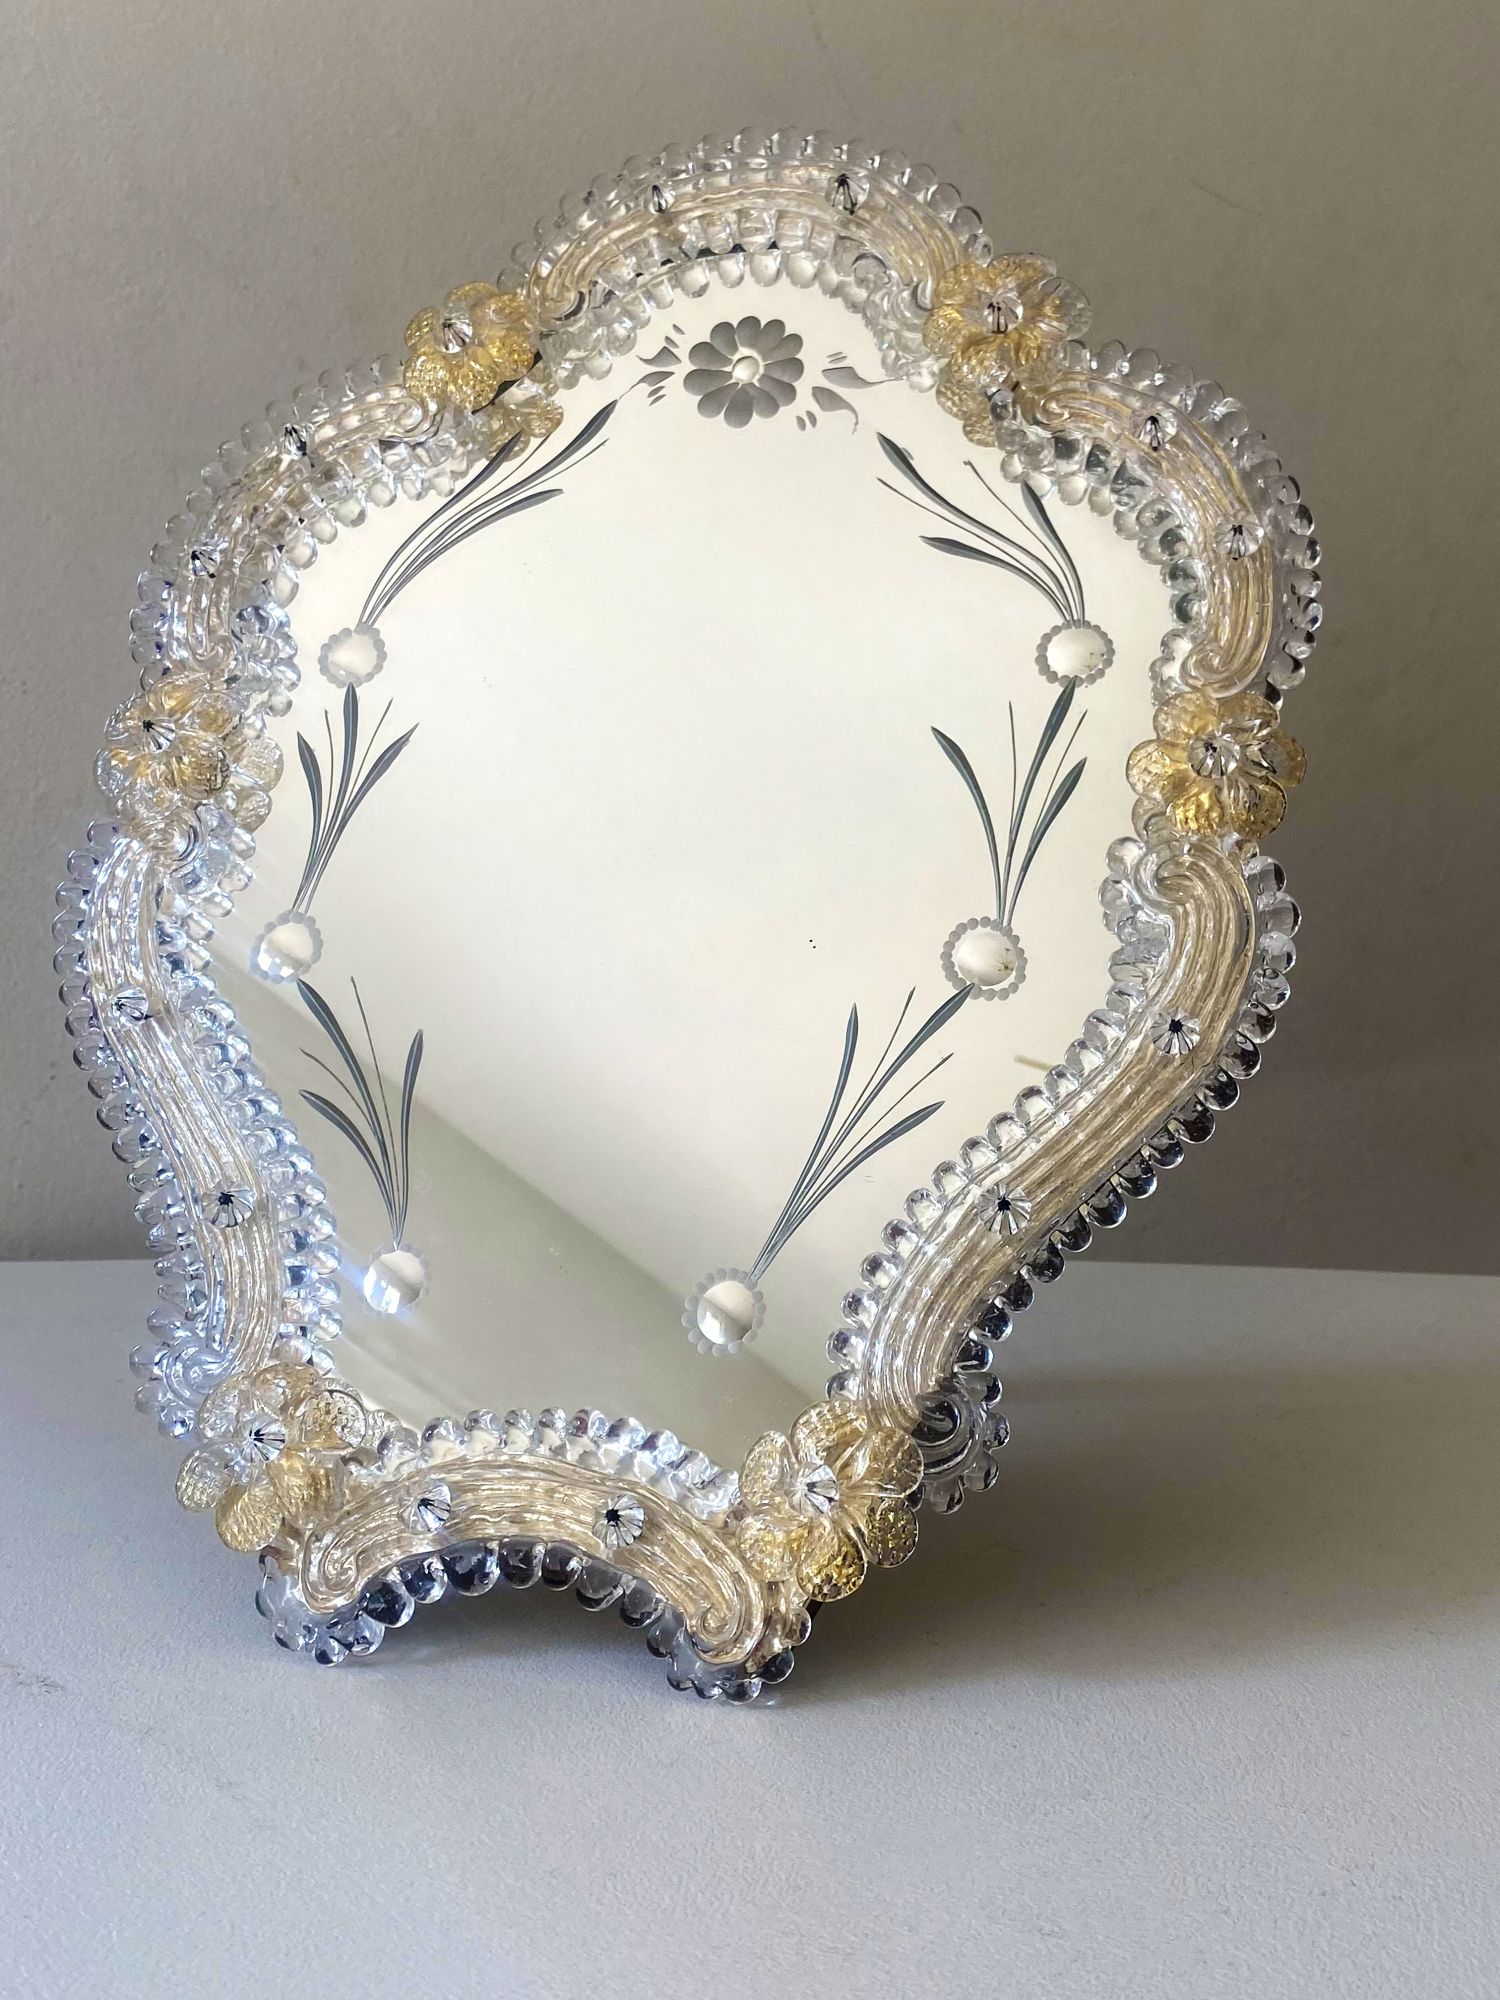 Transparent and gold Murano glass mirror frame with flowers and hand  engraved..rare artigian italian handmade